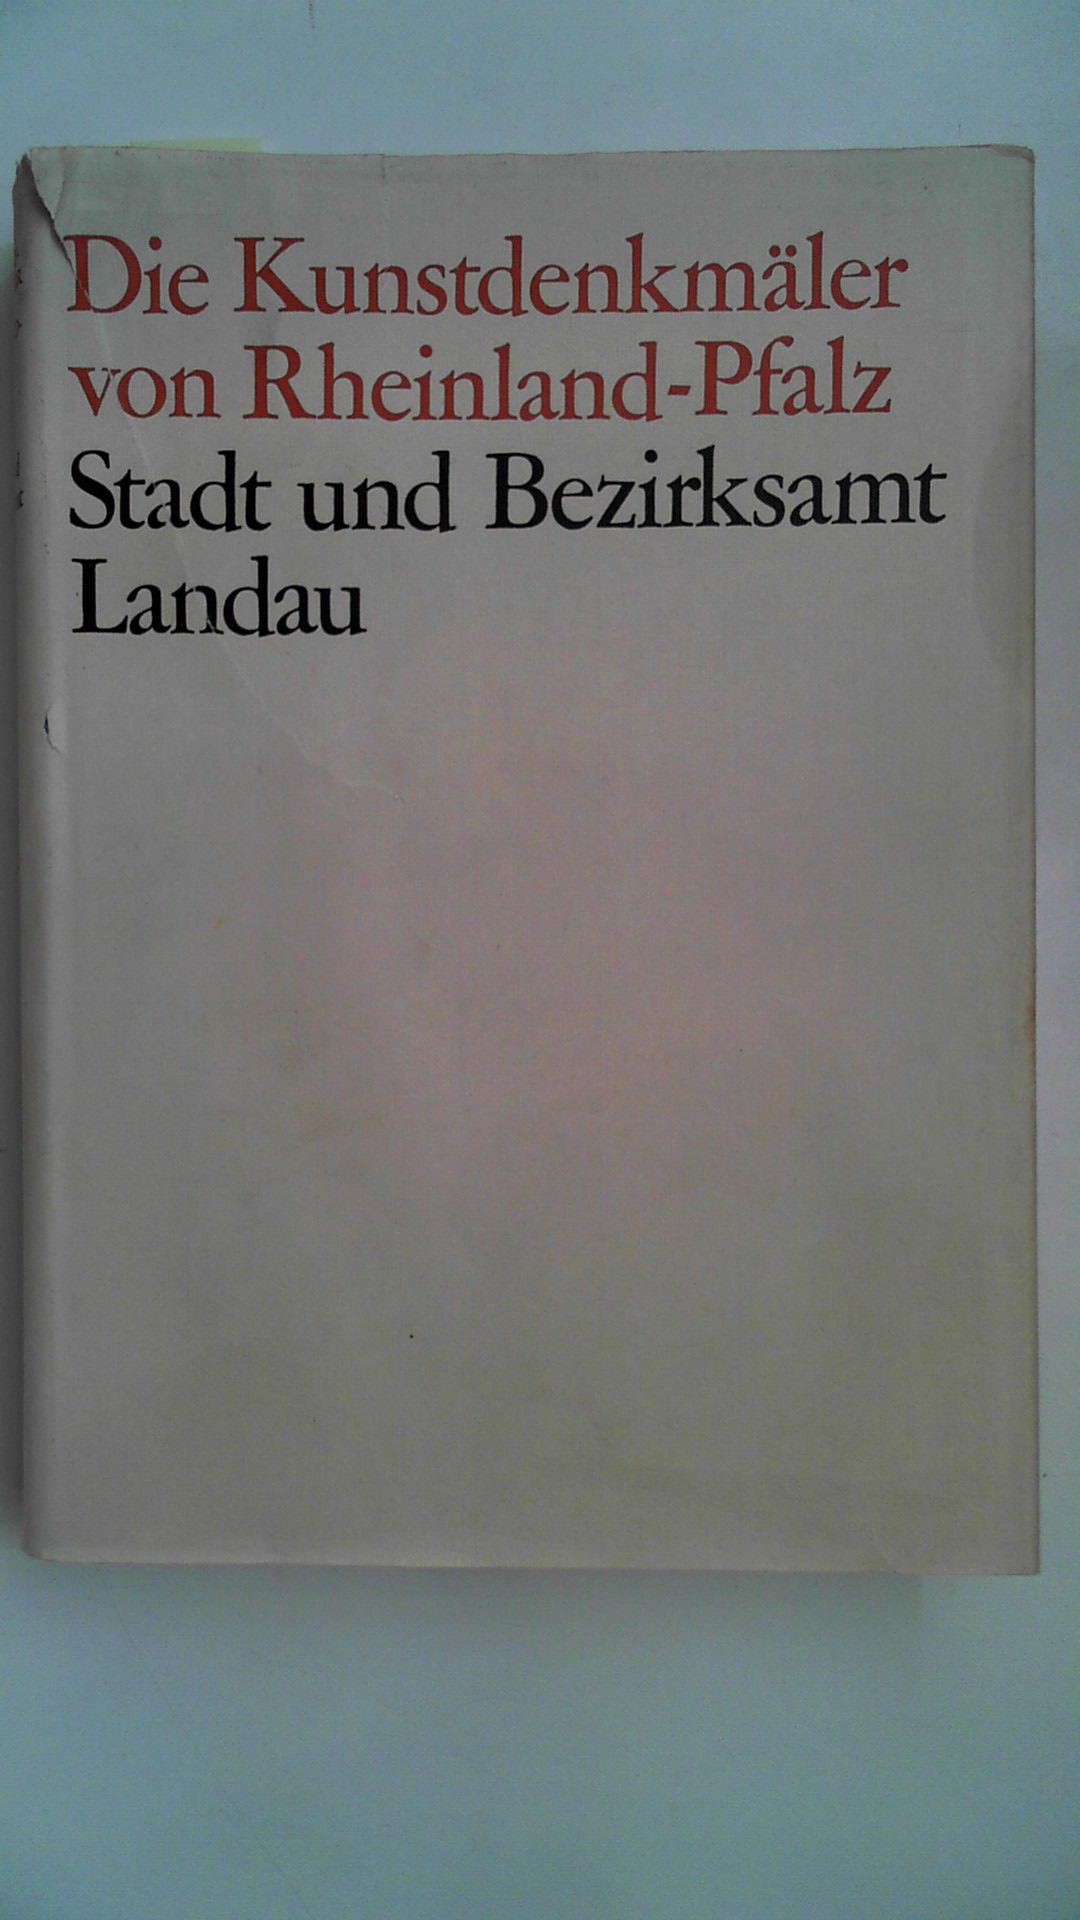 Die Kunstdenkmäler der Pfalz; Teil: 2., Stadt und Bezirksamt Landau. - Eckardt, Anton (Mitwirkender)